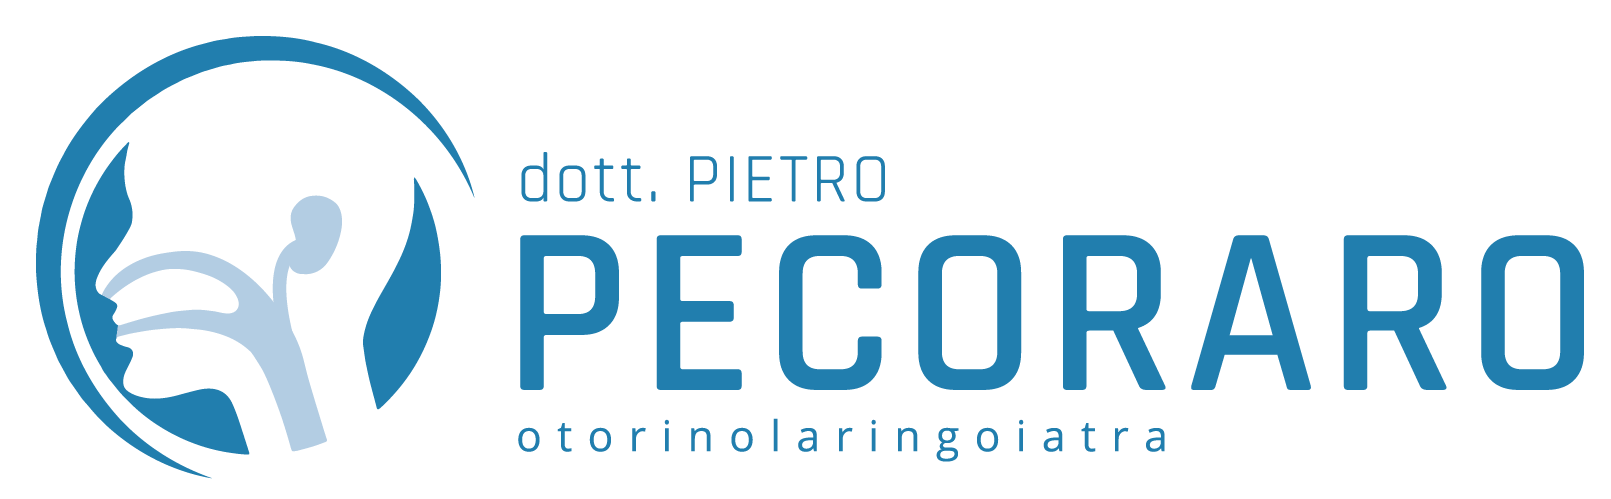 Dottor Pietro Pecoraro